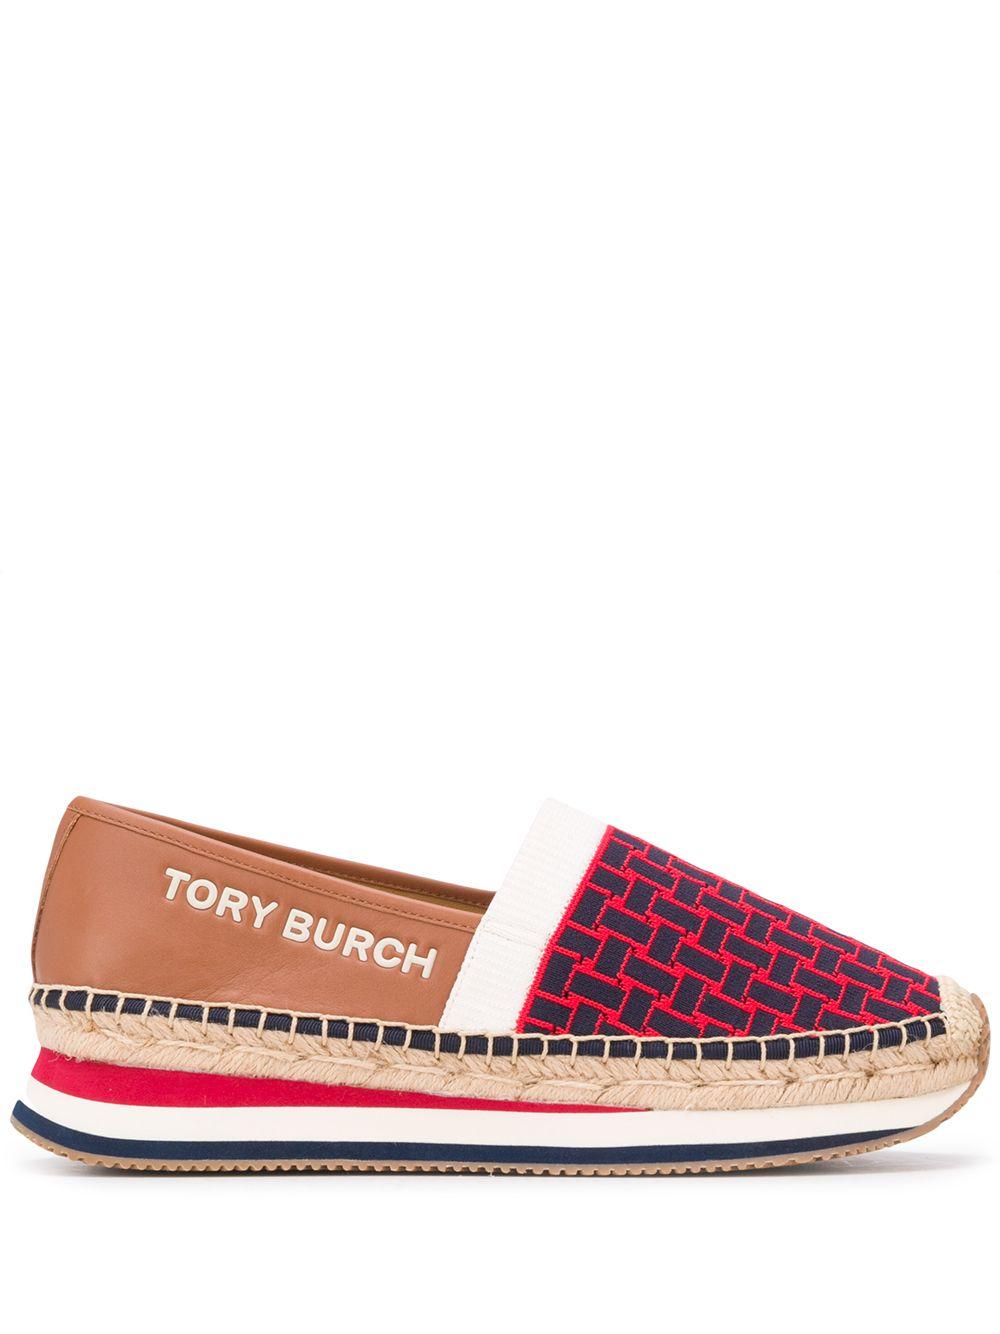 Tory Burch Embossed Logo Platform Espadrilles in Brown | Lyst